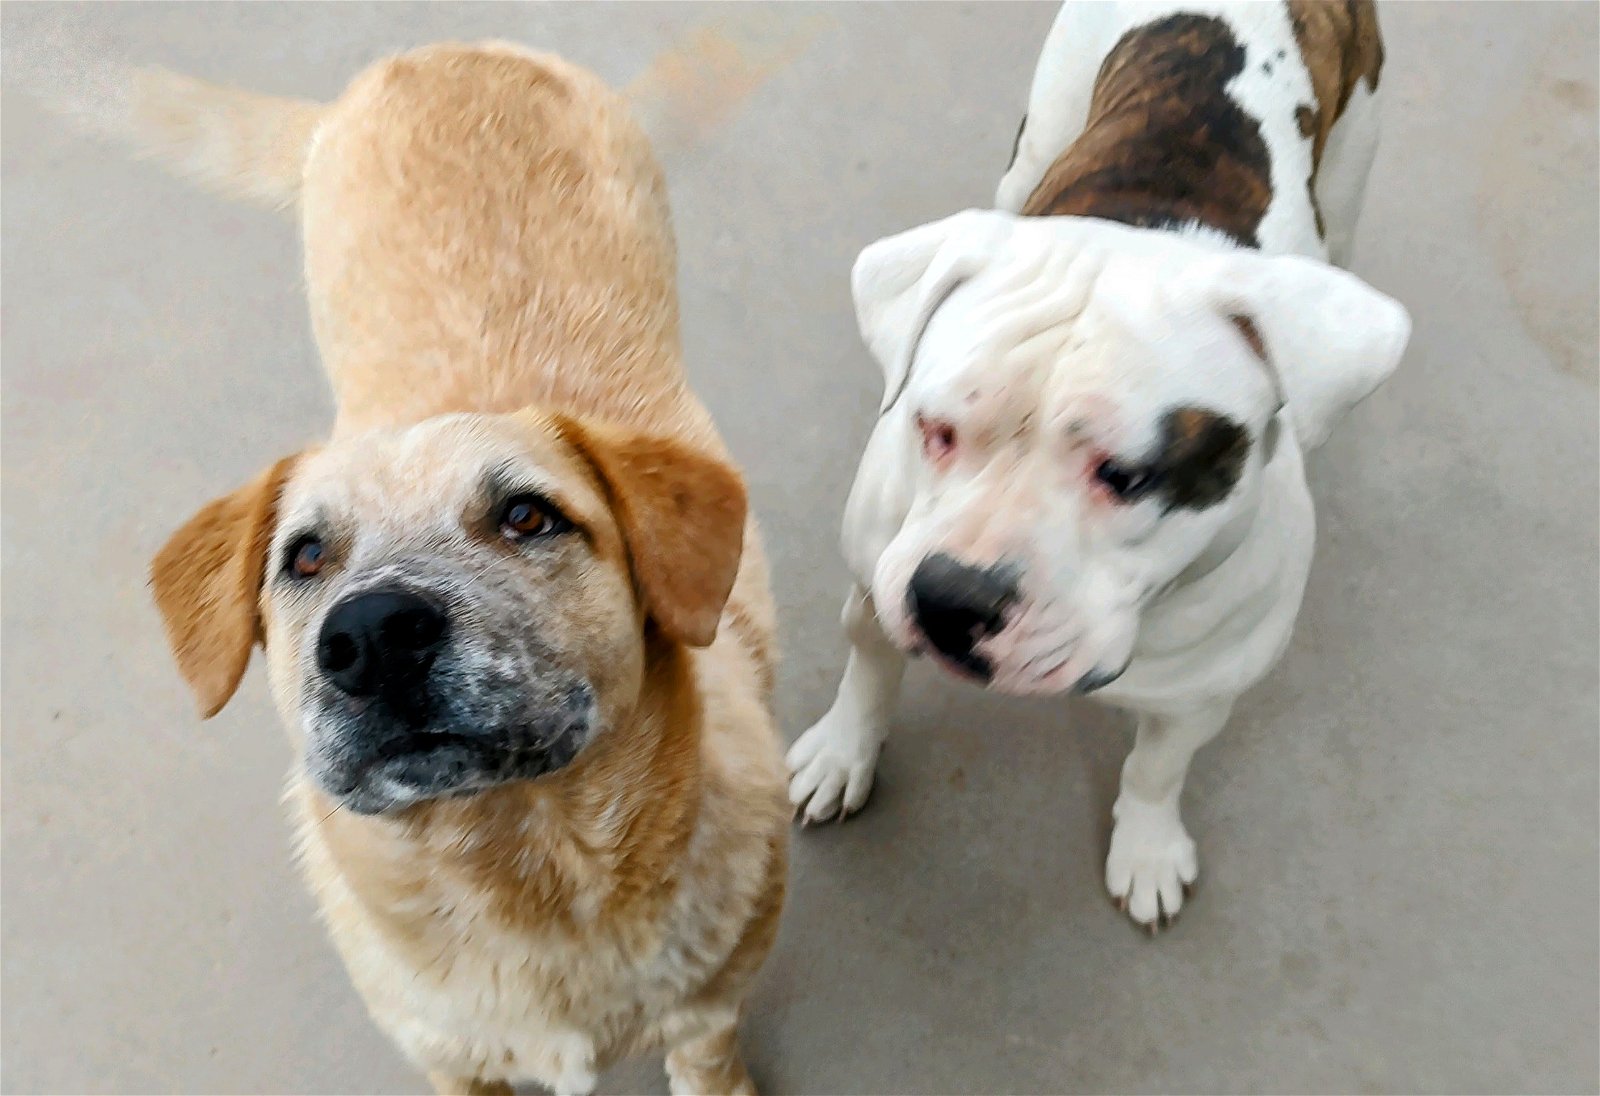 adoptable Dog in Pena Blanca, NM named TOBER & blind dog POPPY